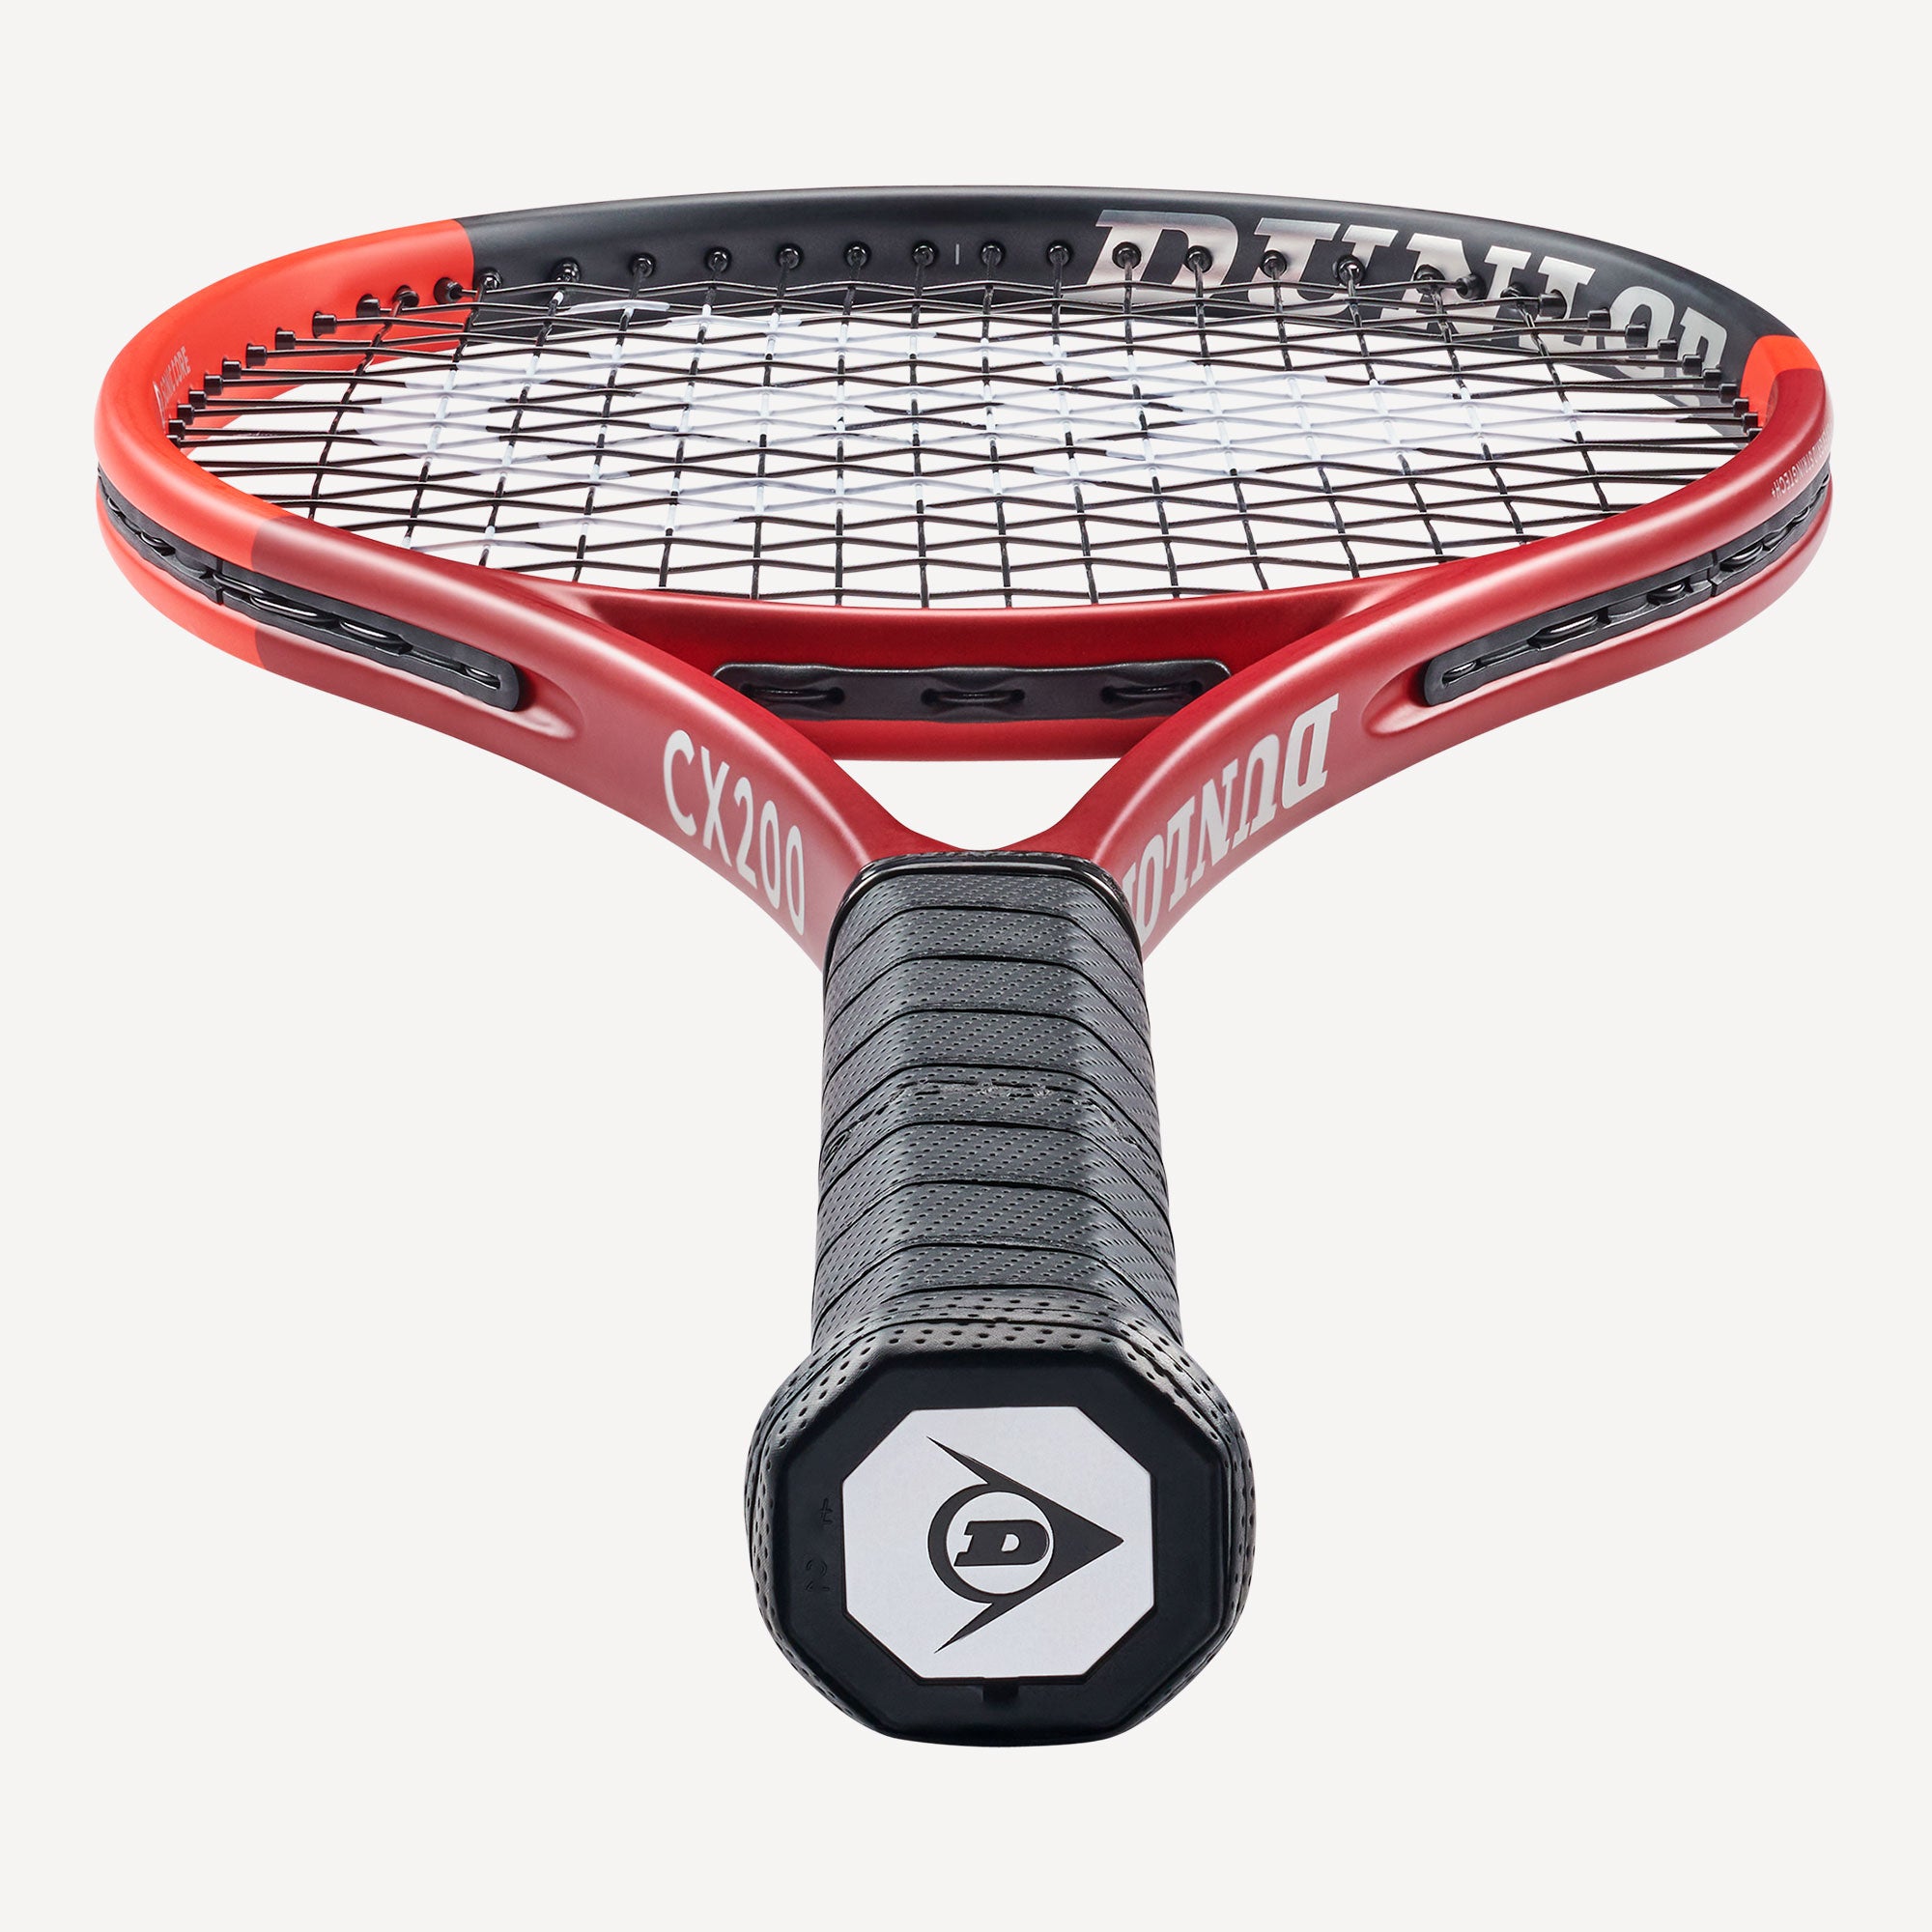 Dunlop CX 200 Tennis Racket (3)